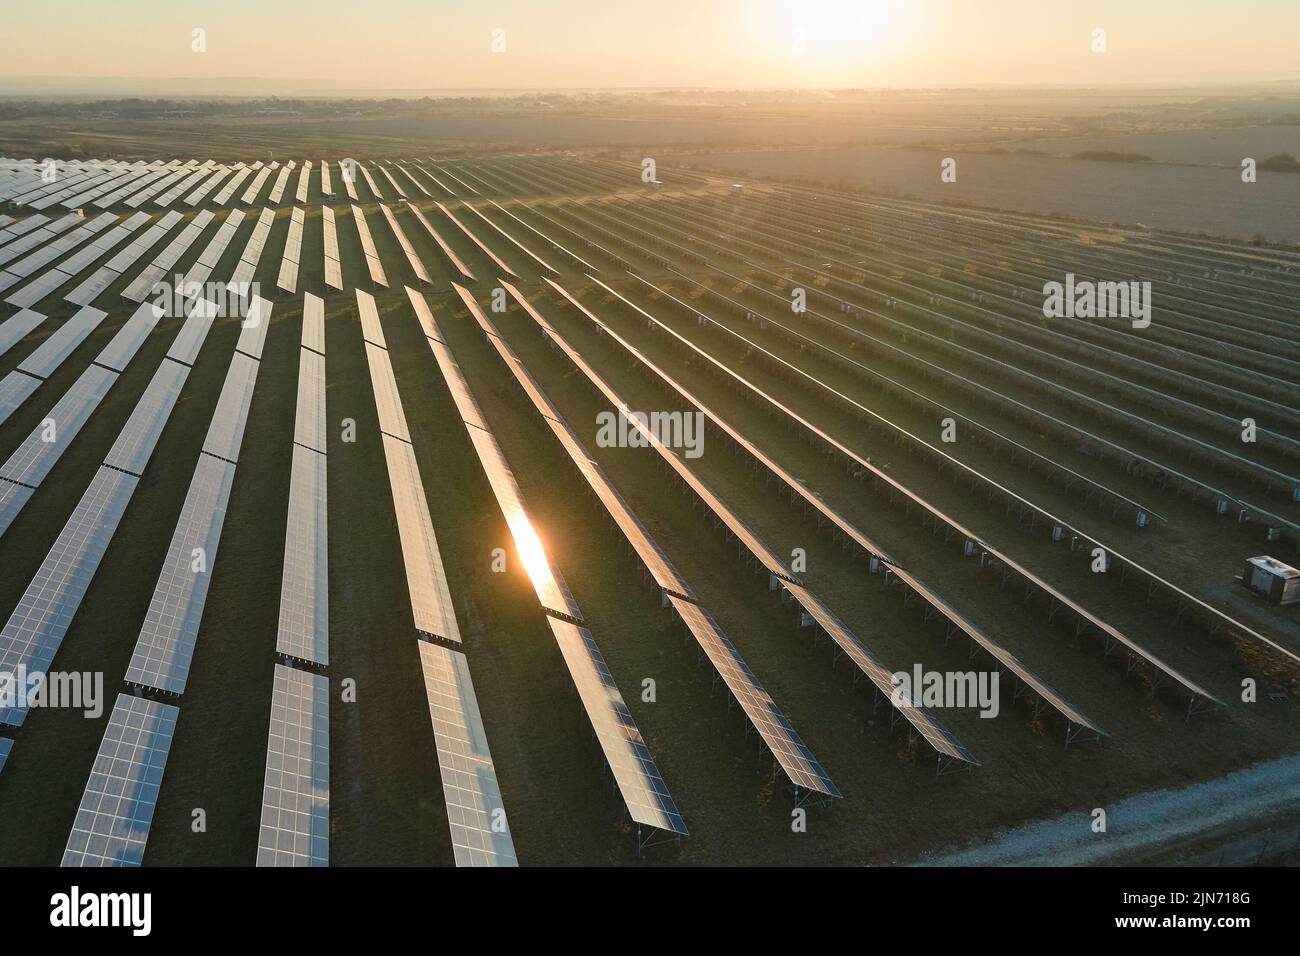 Vue aérienne de la grande centrale électrique durable avec de nombreuses rangées de panneaux photovoltaïques solaires pour produire de l'énergie électrique propre au coucher du soleil Banque D'Images